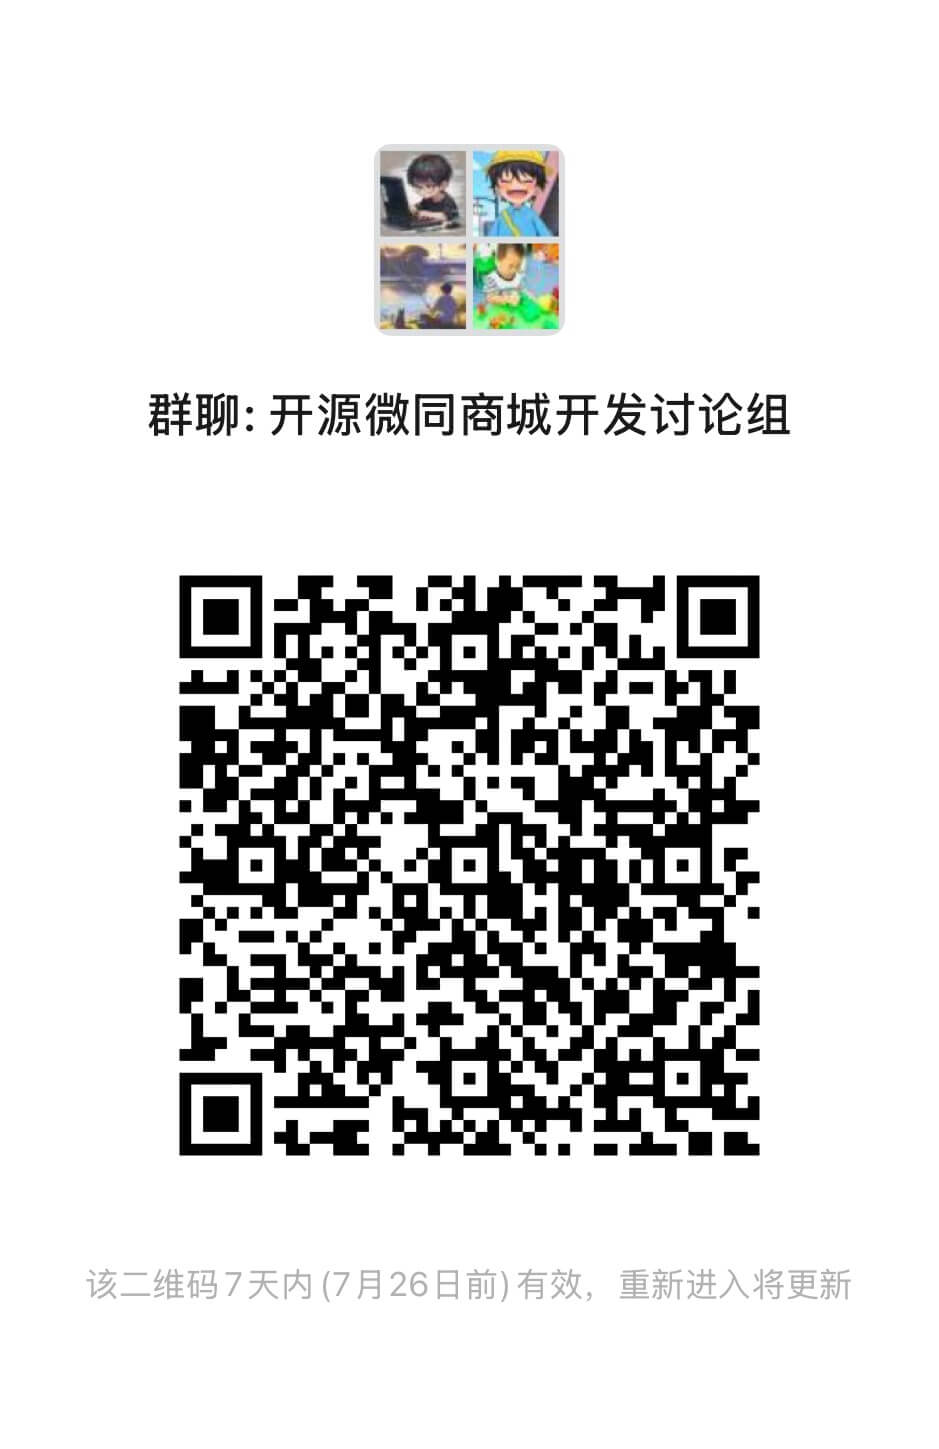 http://platform-wxmall.oss-cn-beijing.aliyuncs.com/kaiyuangroup.jpg